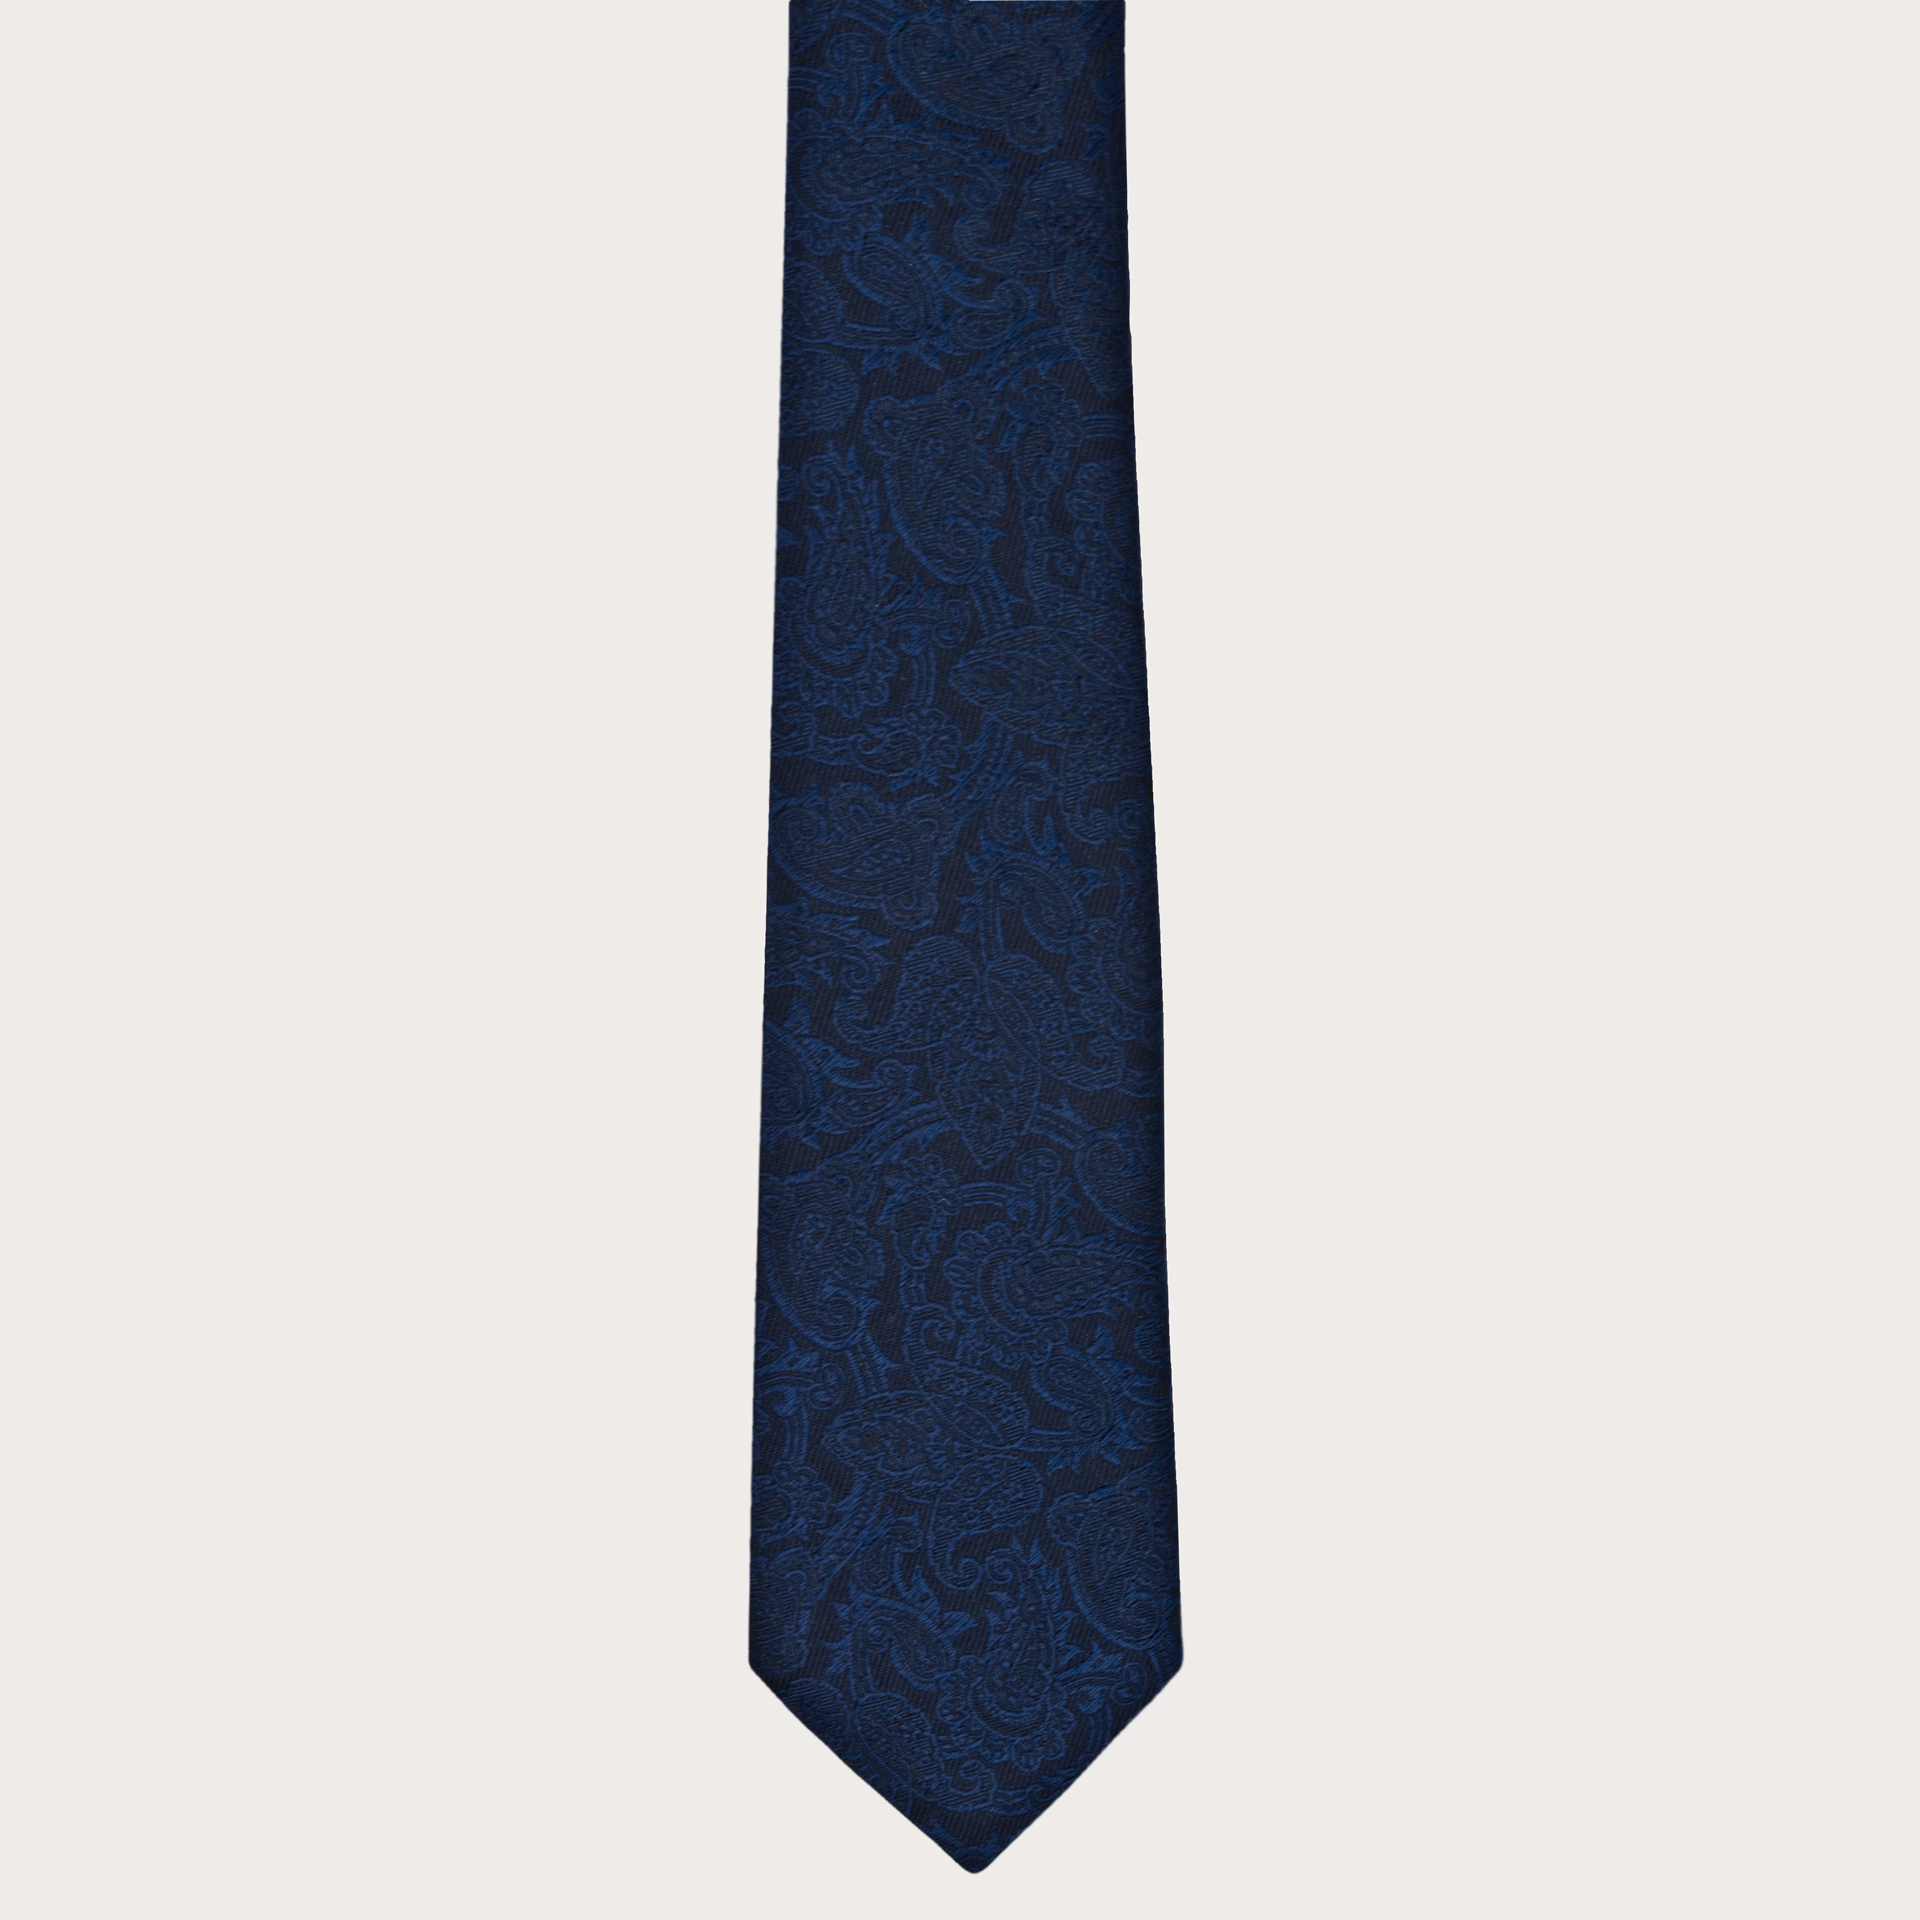 Corbata en jacquard de seda tono sobre tono azul paisley